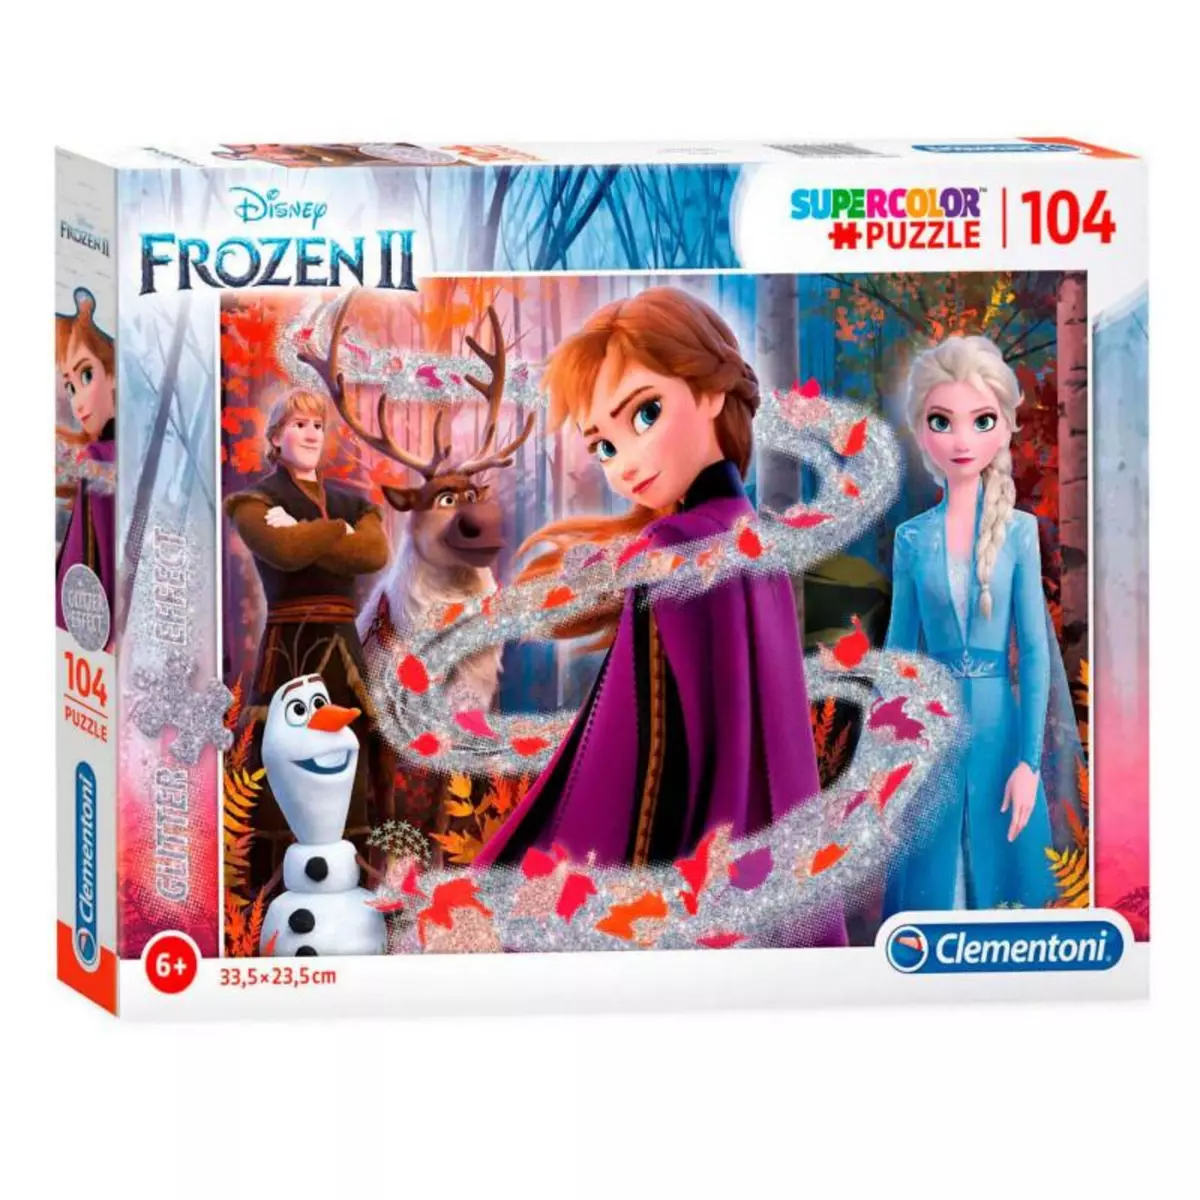 CLEMENTONI Clementoni Glitter Disney Frozen 2 Puzzle, 104st.